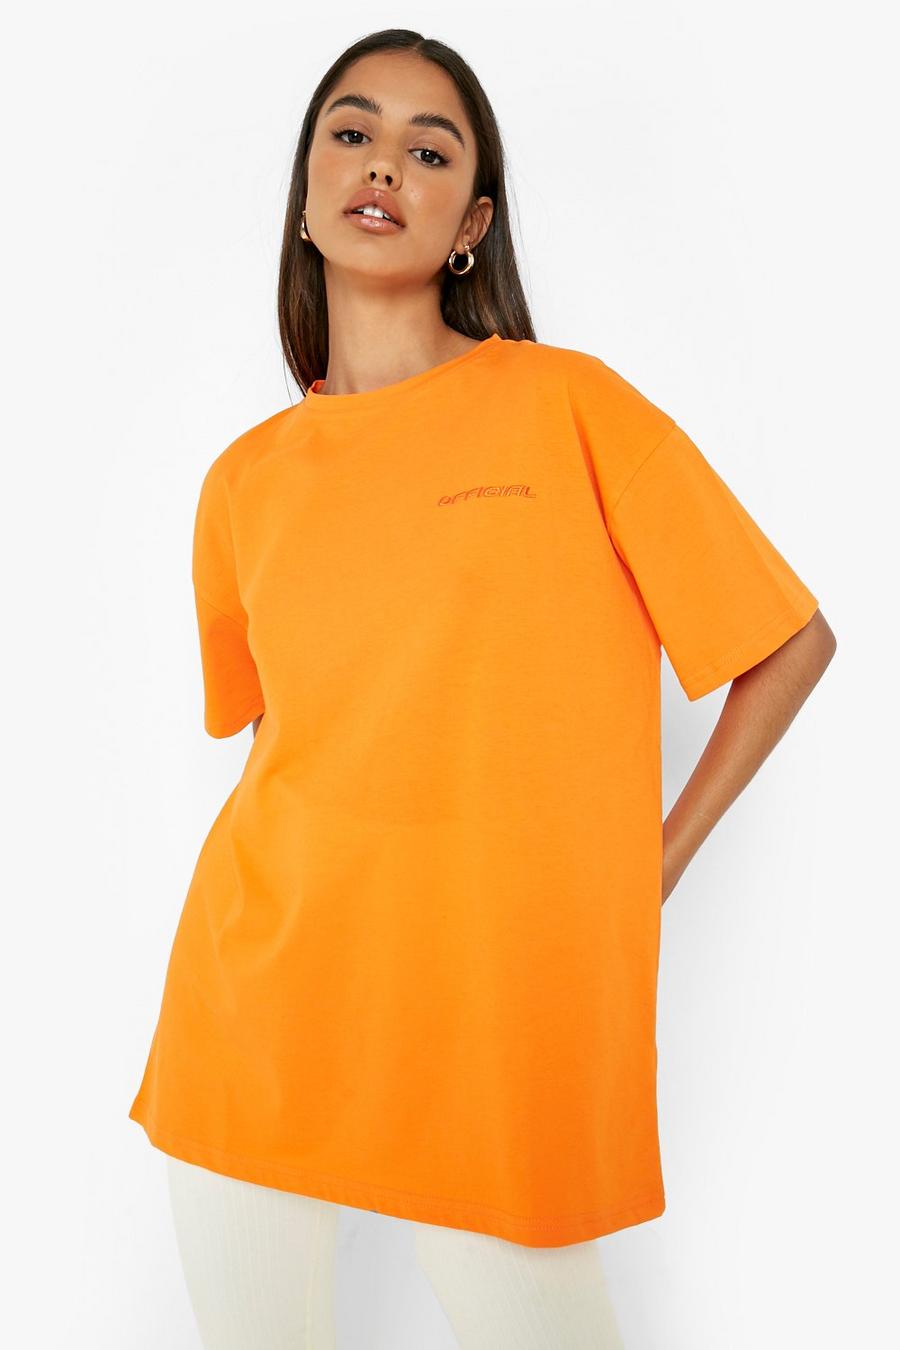 T-shirt oversize Official tono su tono a maniche corte, Orange arancio